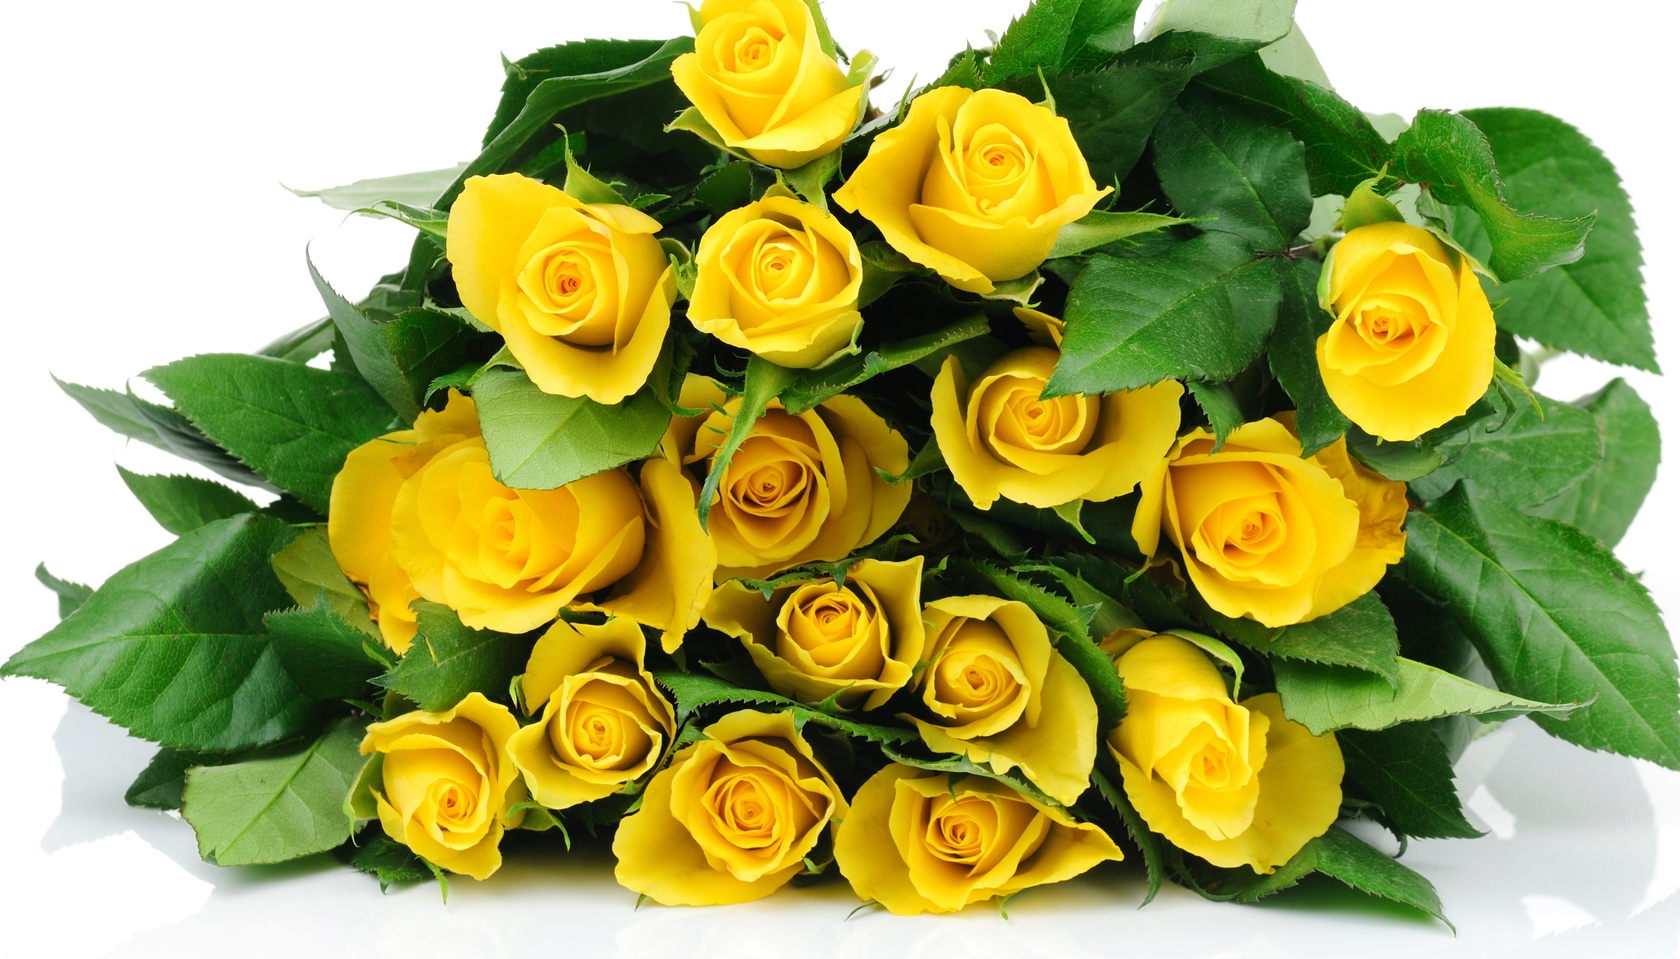 Природа, пейзаж Цветы розы, желтые, букет, бутоны, листья, белый фон красивые обои рабочий стол